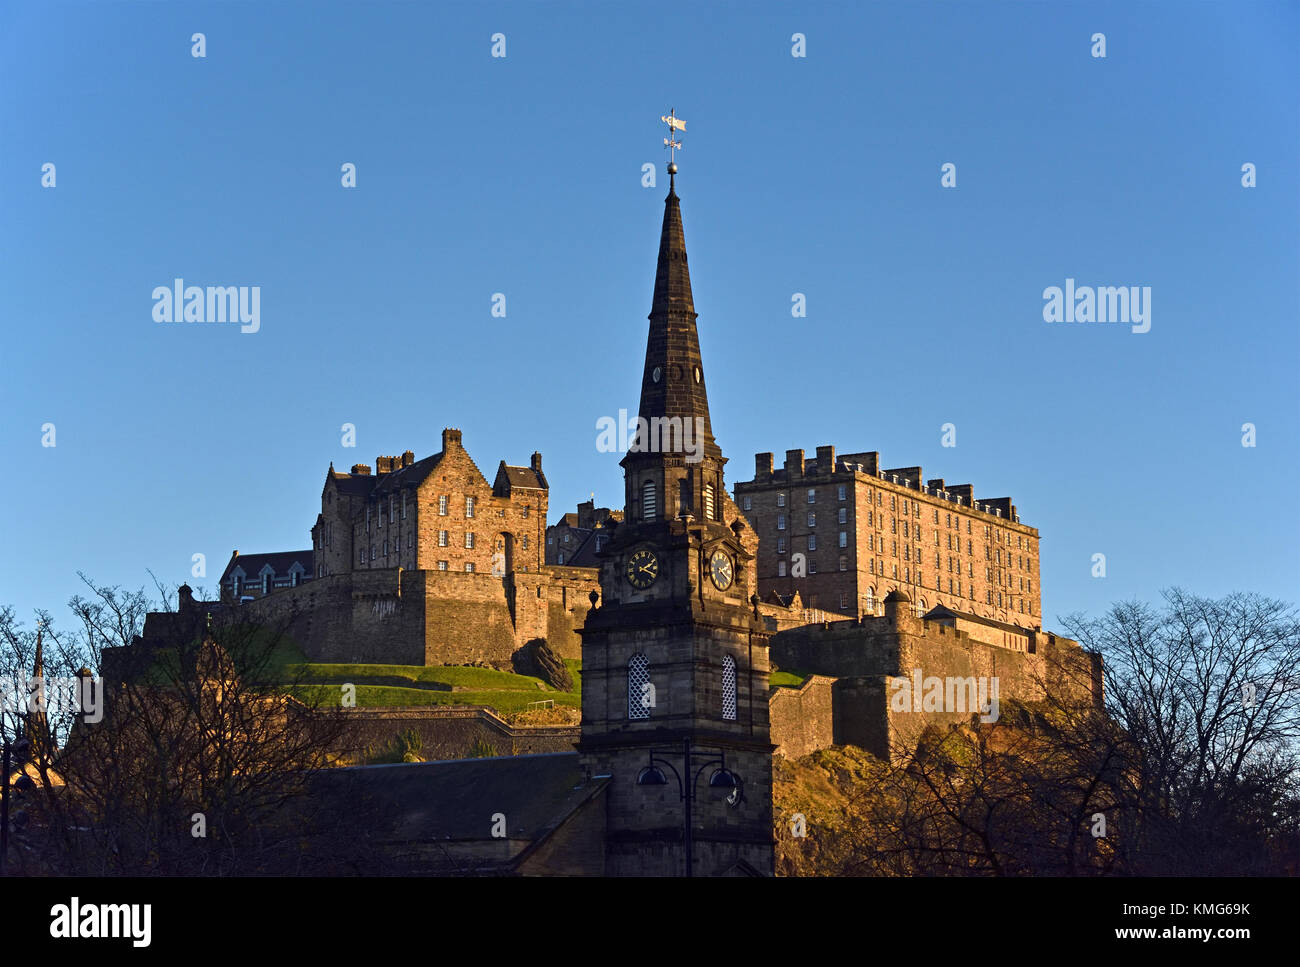 Eglise de Saint Cuthbert et château d'Edimbourg en décembre du soleil, vu de Lothian Road, Édimbourg, Écosse, Royaume-Uni, Europe. Banque D'Images